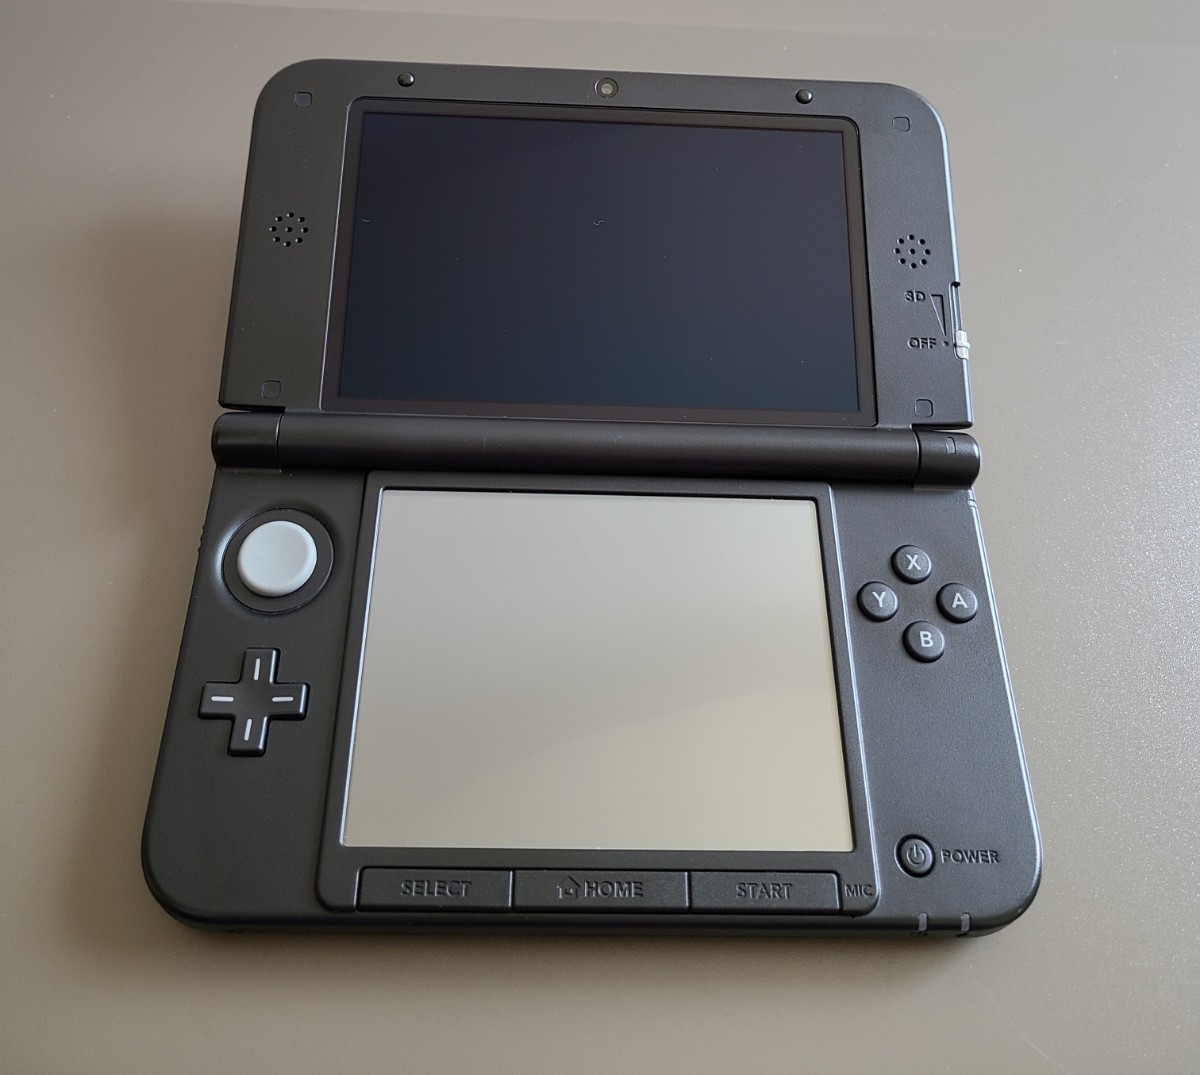 ニンテンドー3DS LL ブラック 3DSLL 任天堂 Nintendo 黒 BLACK 任天堂